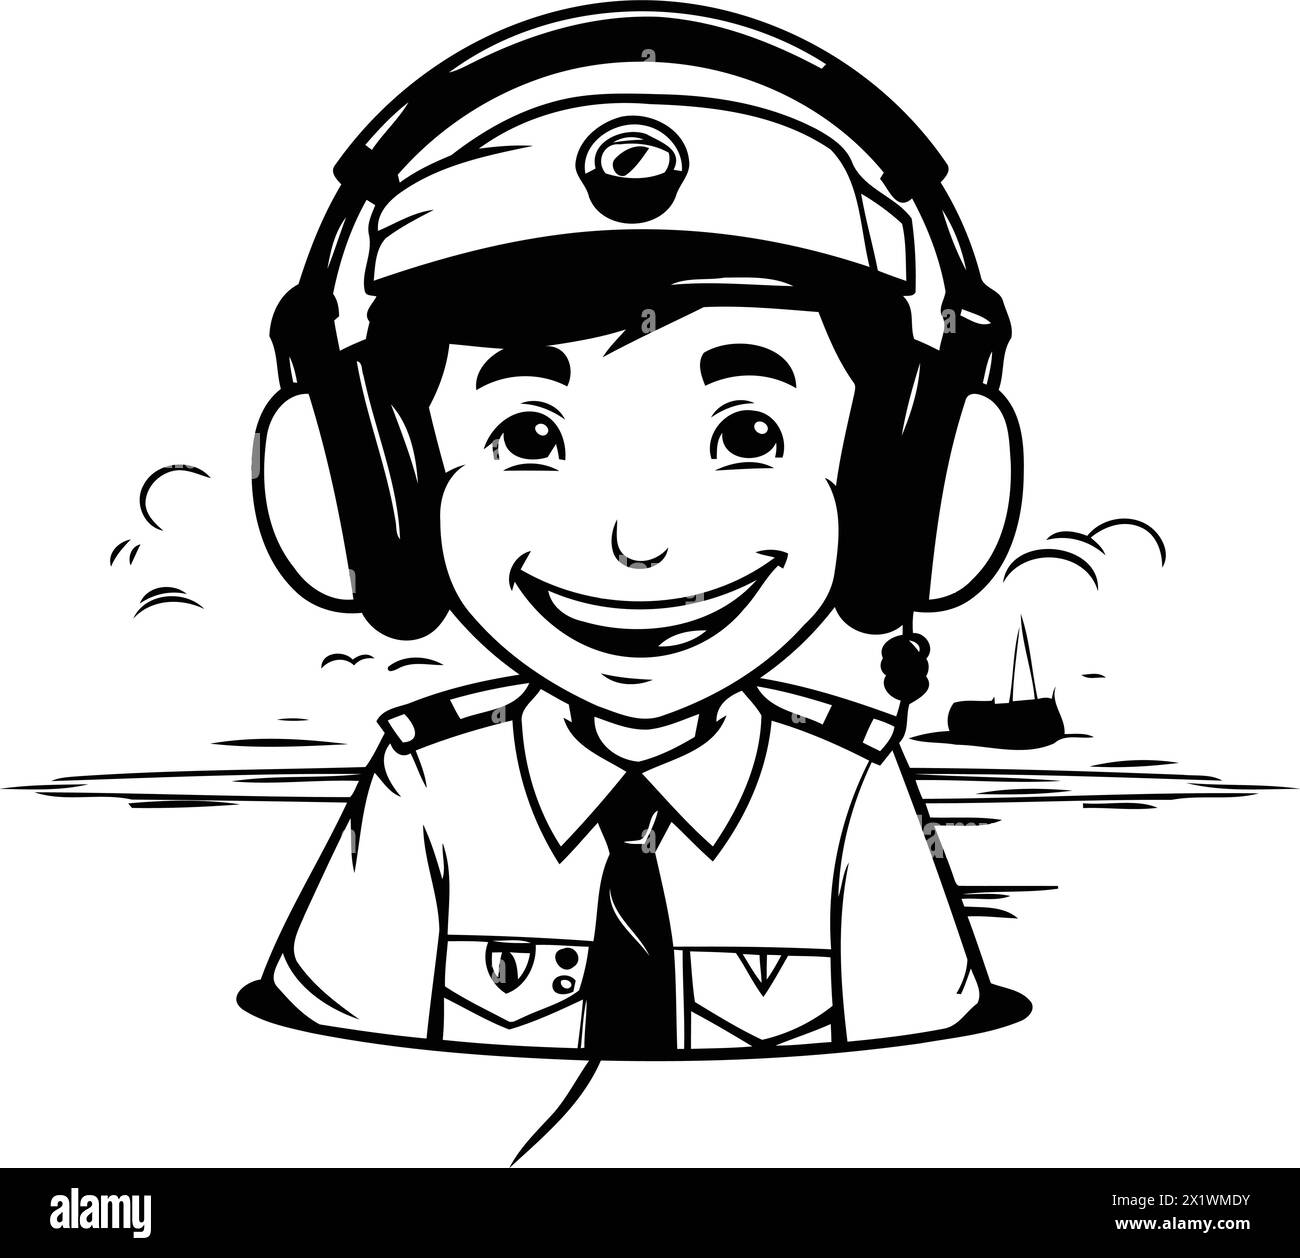 Lächelnder Junge in einer Pilotenmütze mit Kopfhörern. Vektorabbildung. Stock Vektor